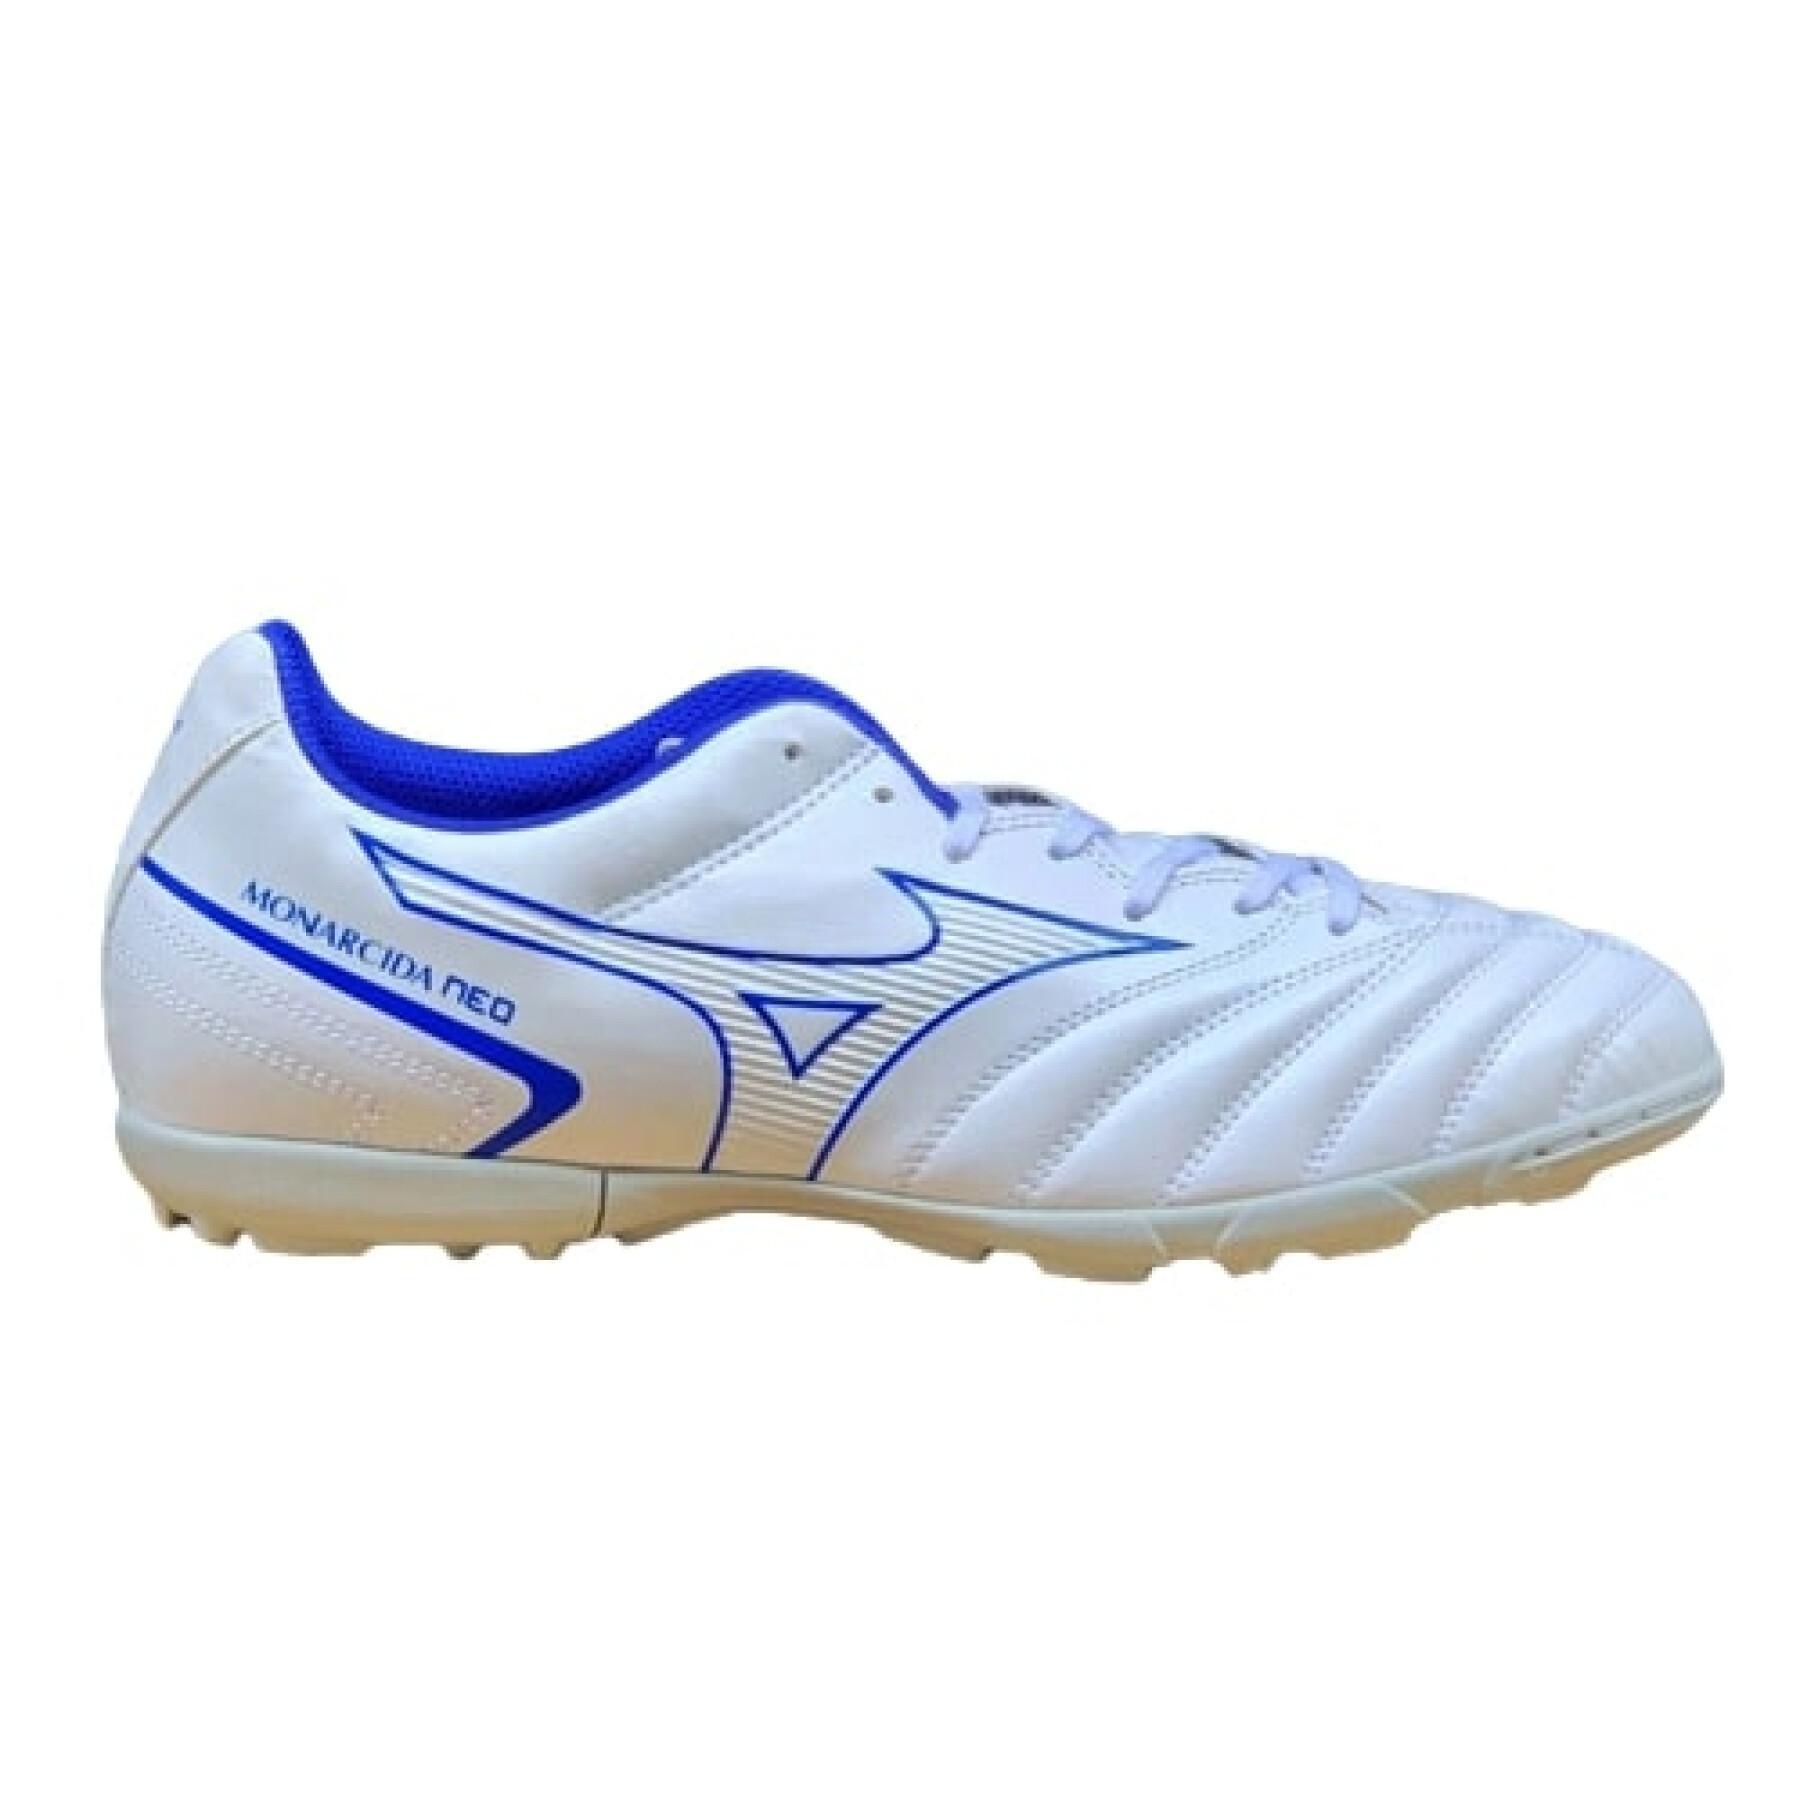 Chaussures de football Mizuno Monarcida Neo Select AS